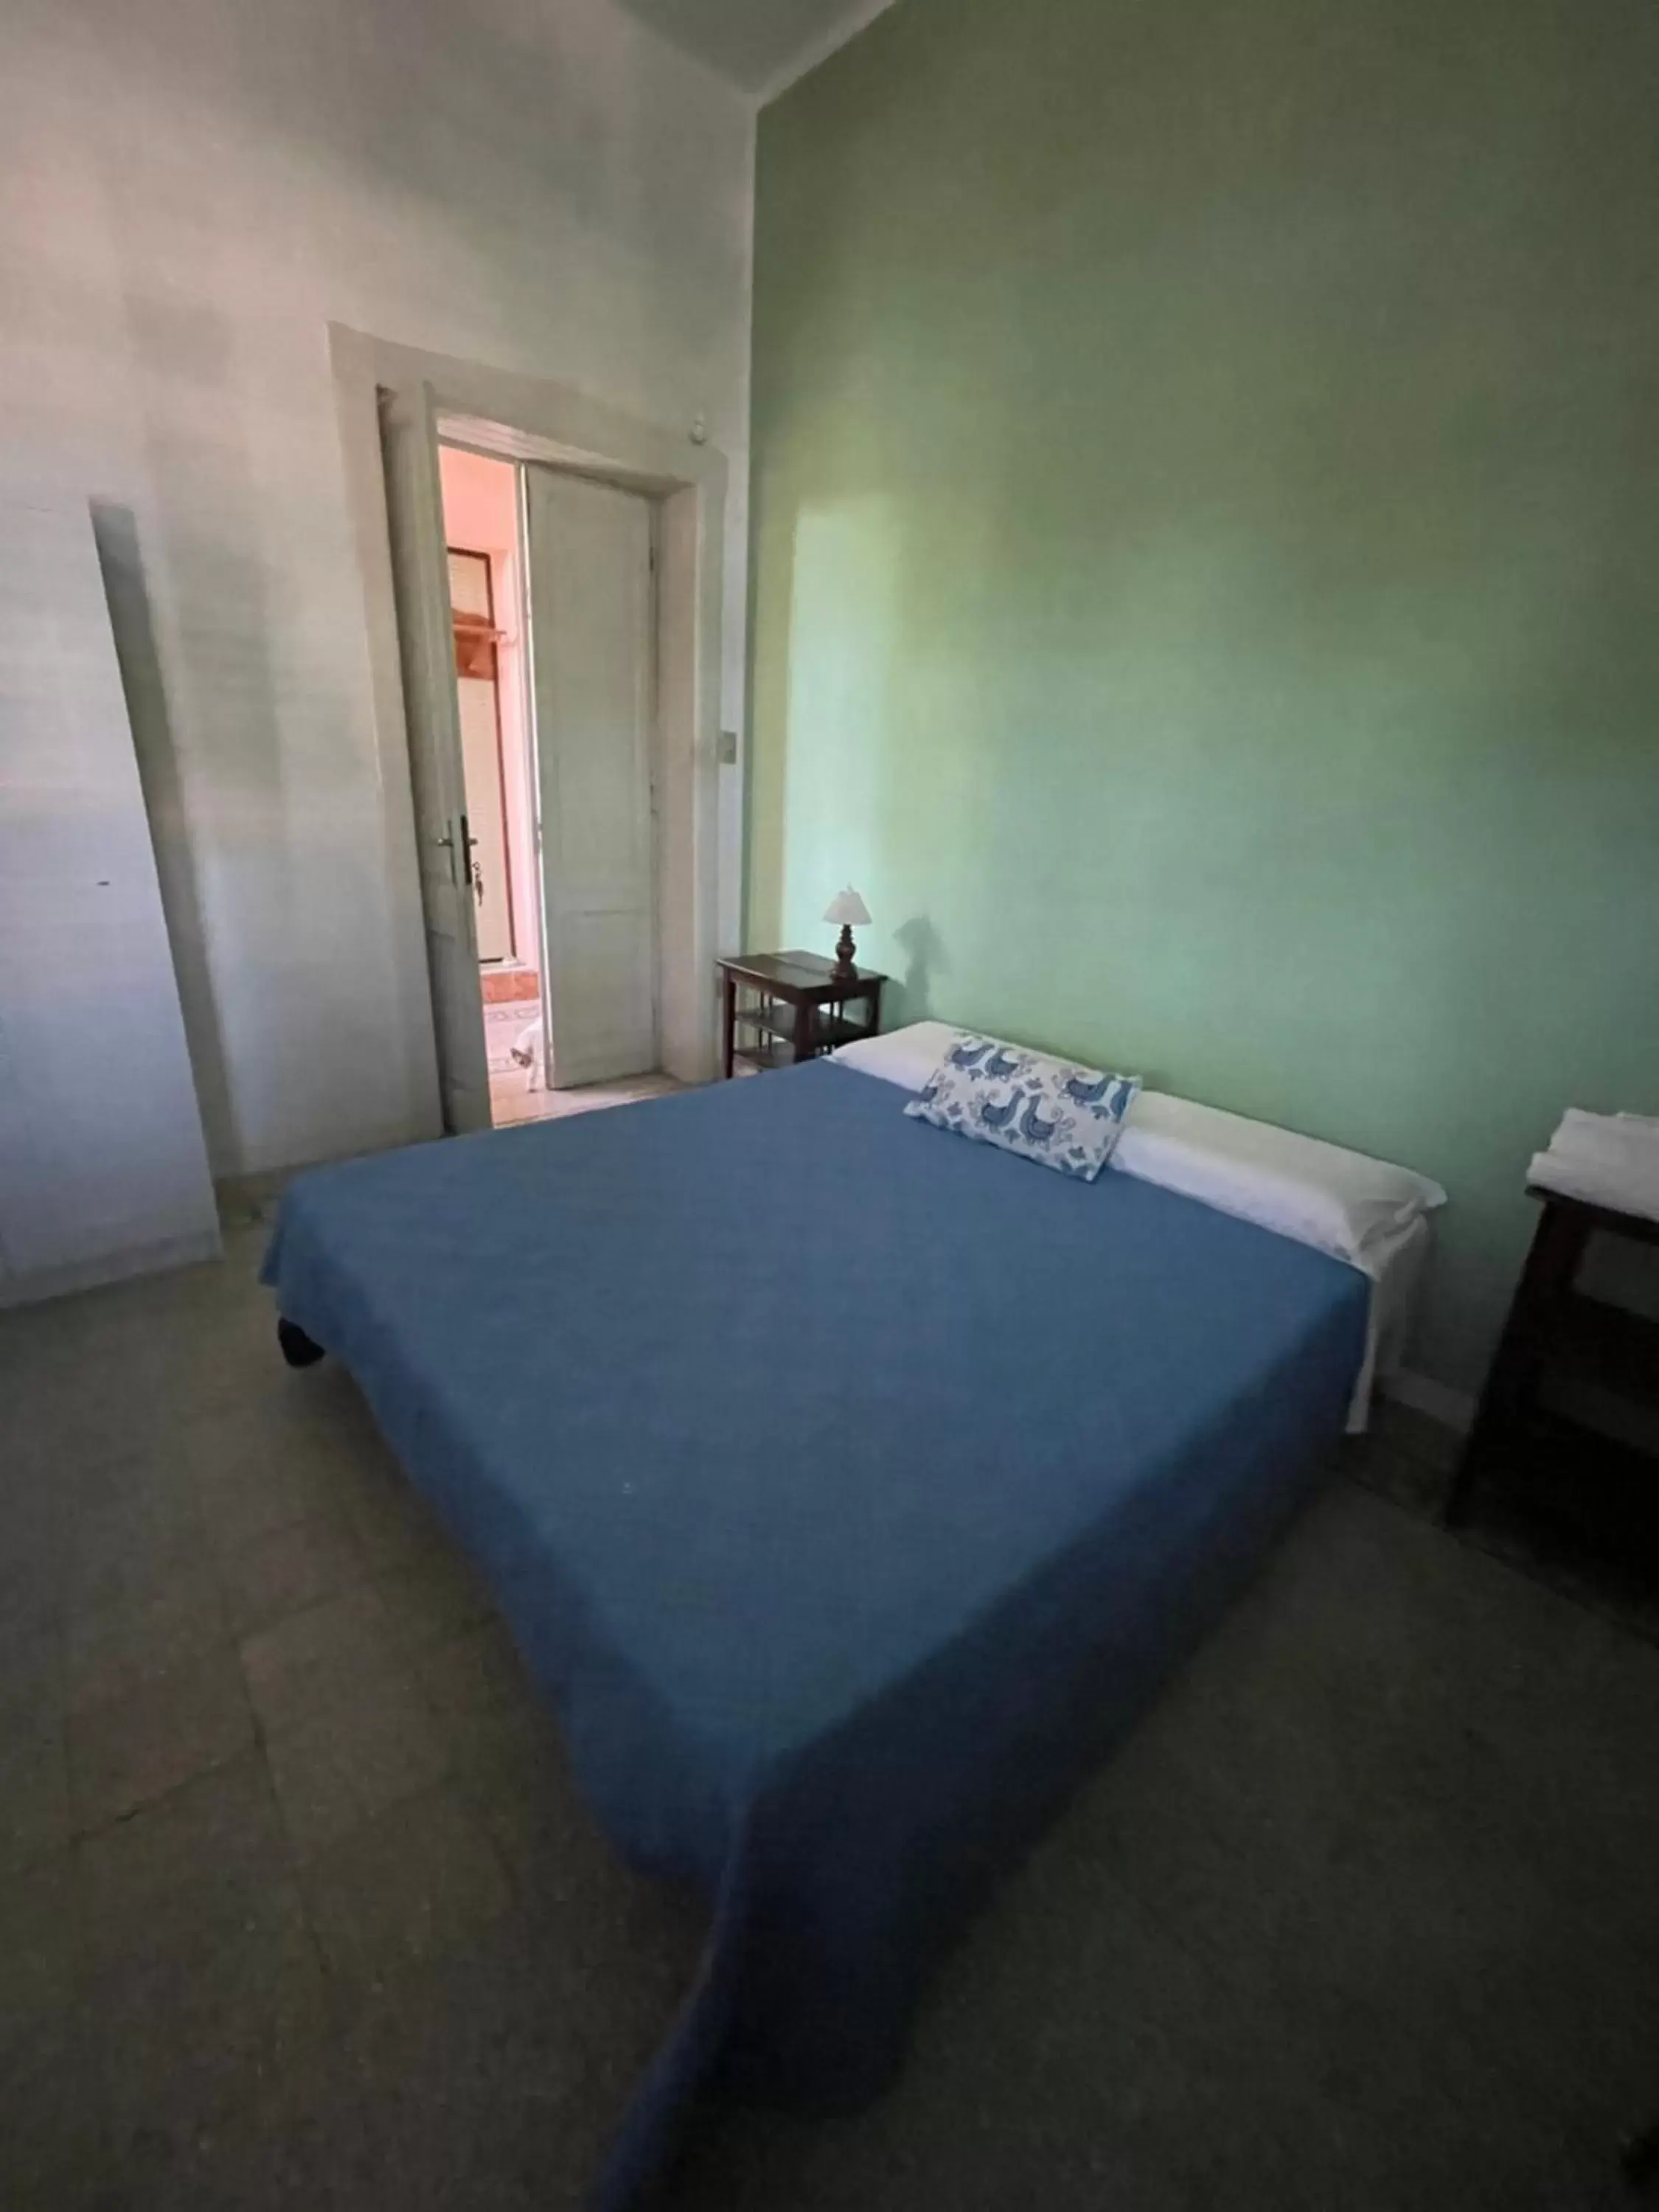 Bed in Villino Vanzetti 1930